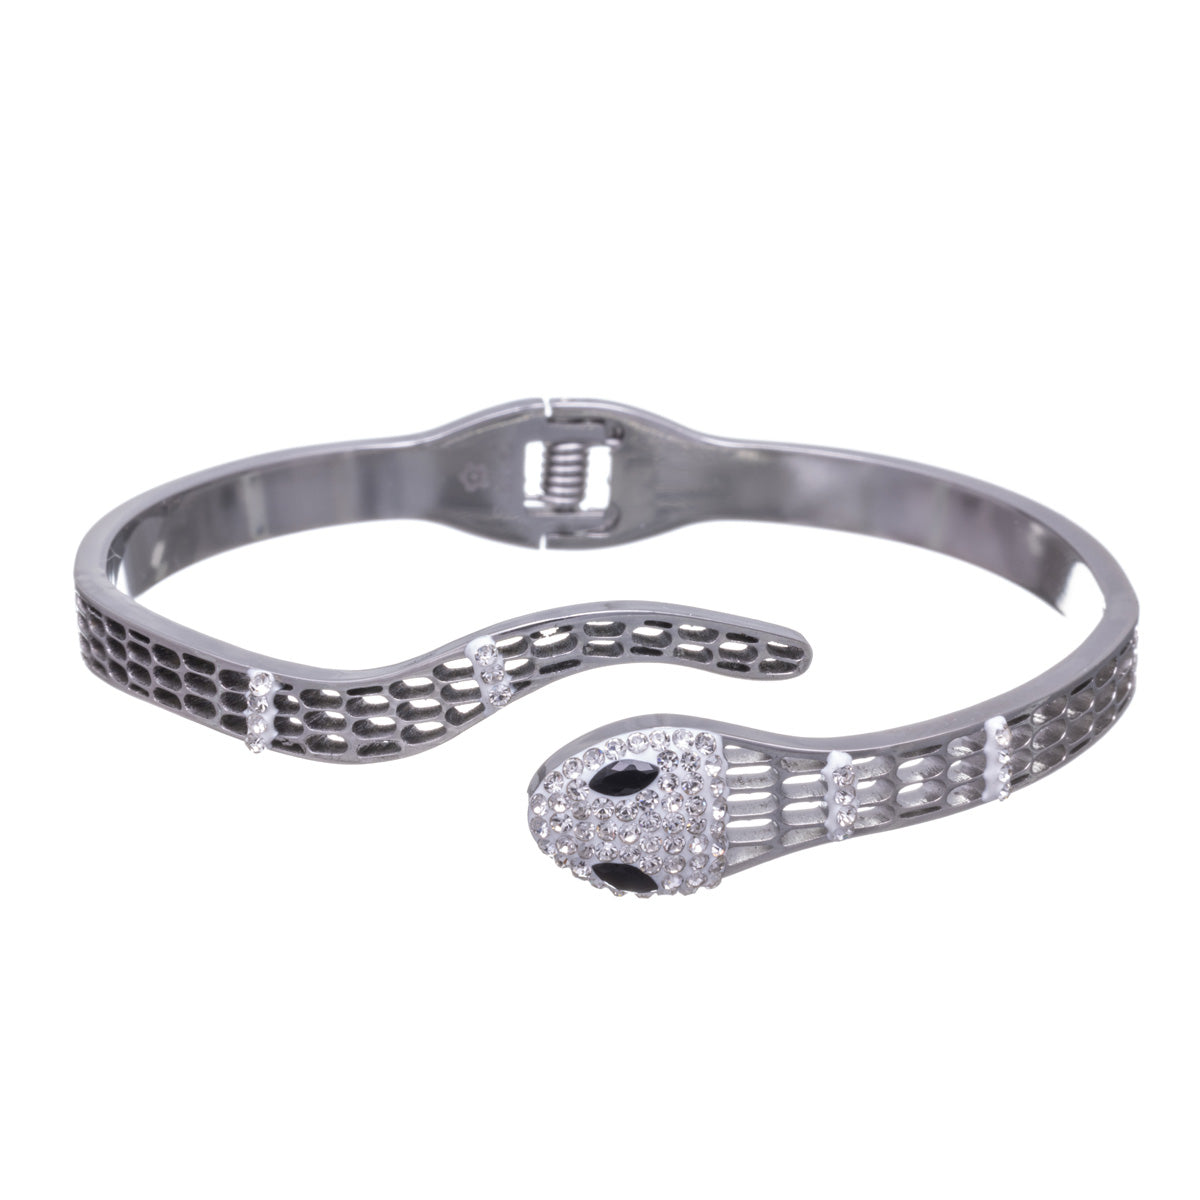 Sparkling steel snake bracelet with hinge